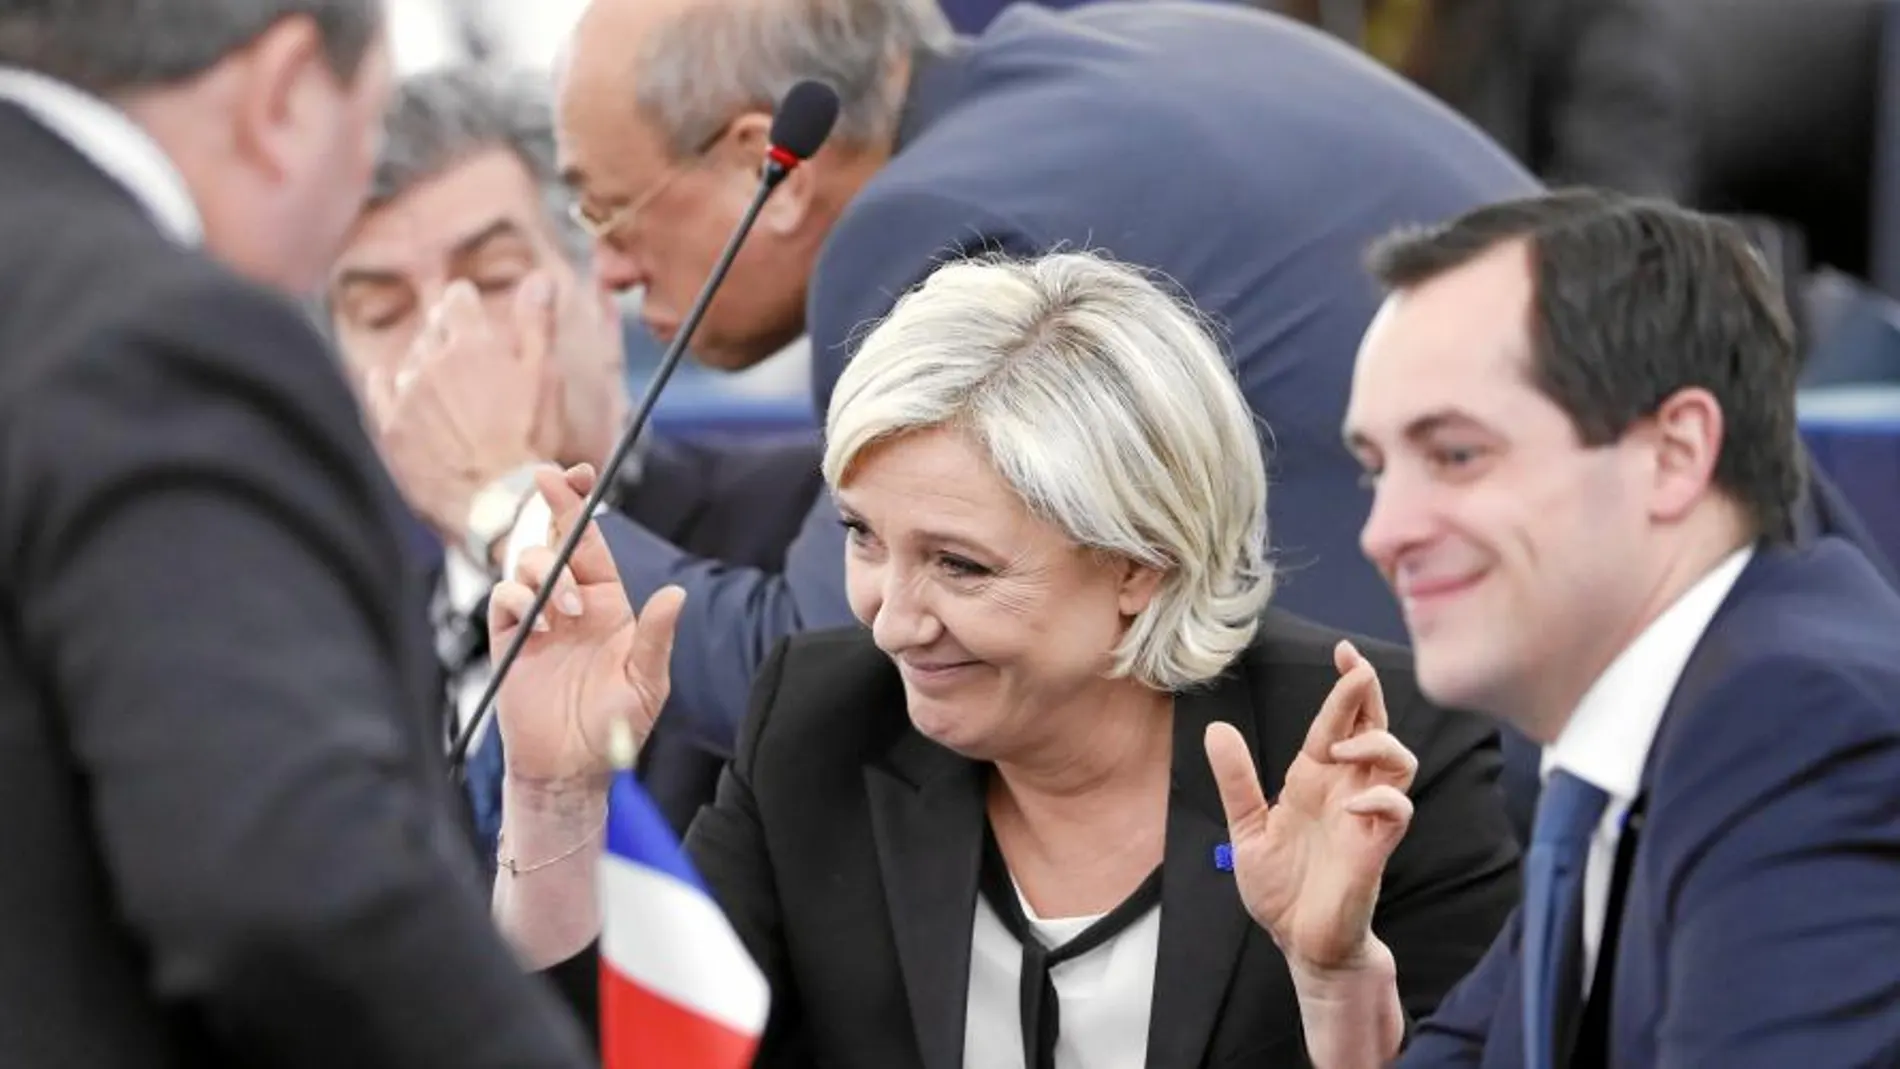 La líder del Frente Nacional, Marine Le Pen, acudió ayer al Pleno del Parlamento Europeo en Estrasburgo